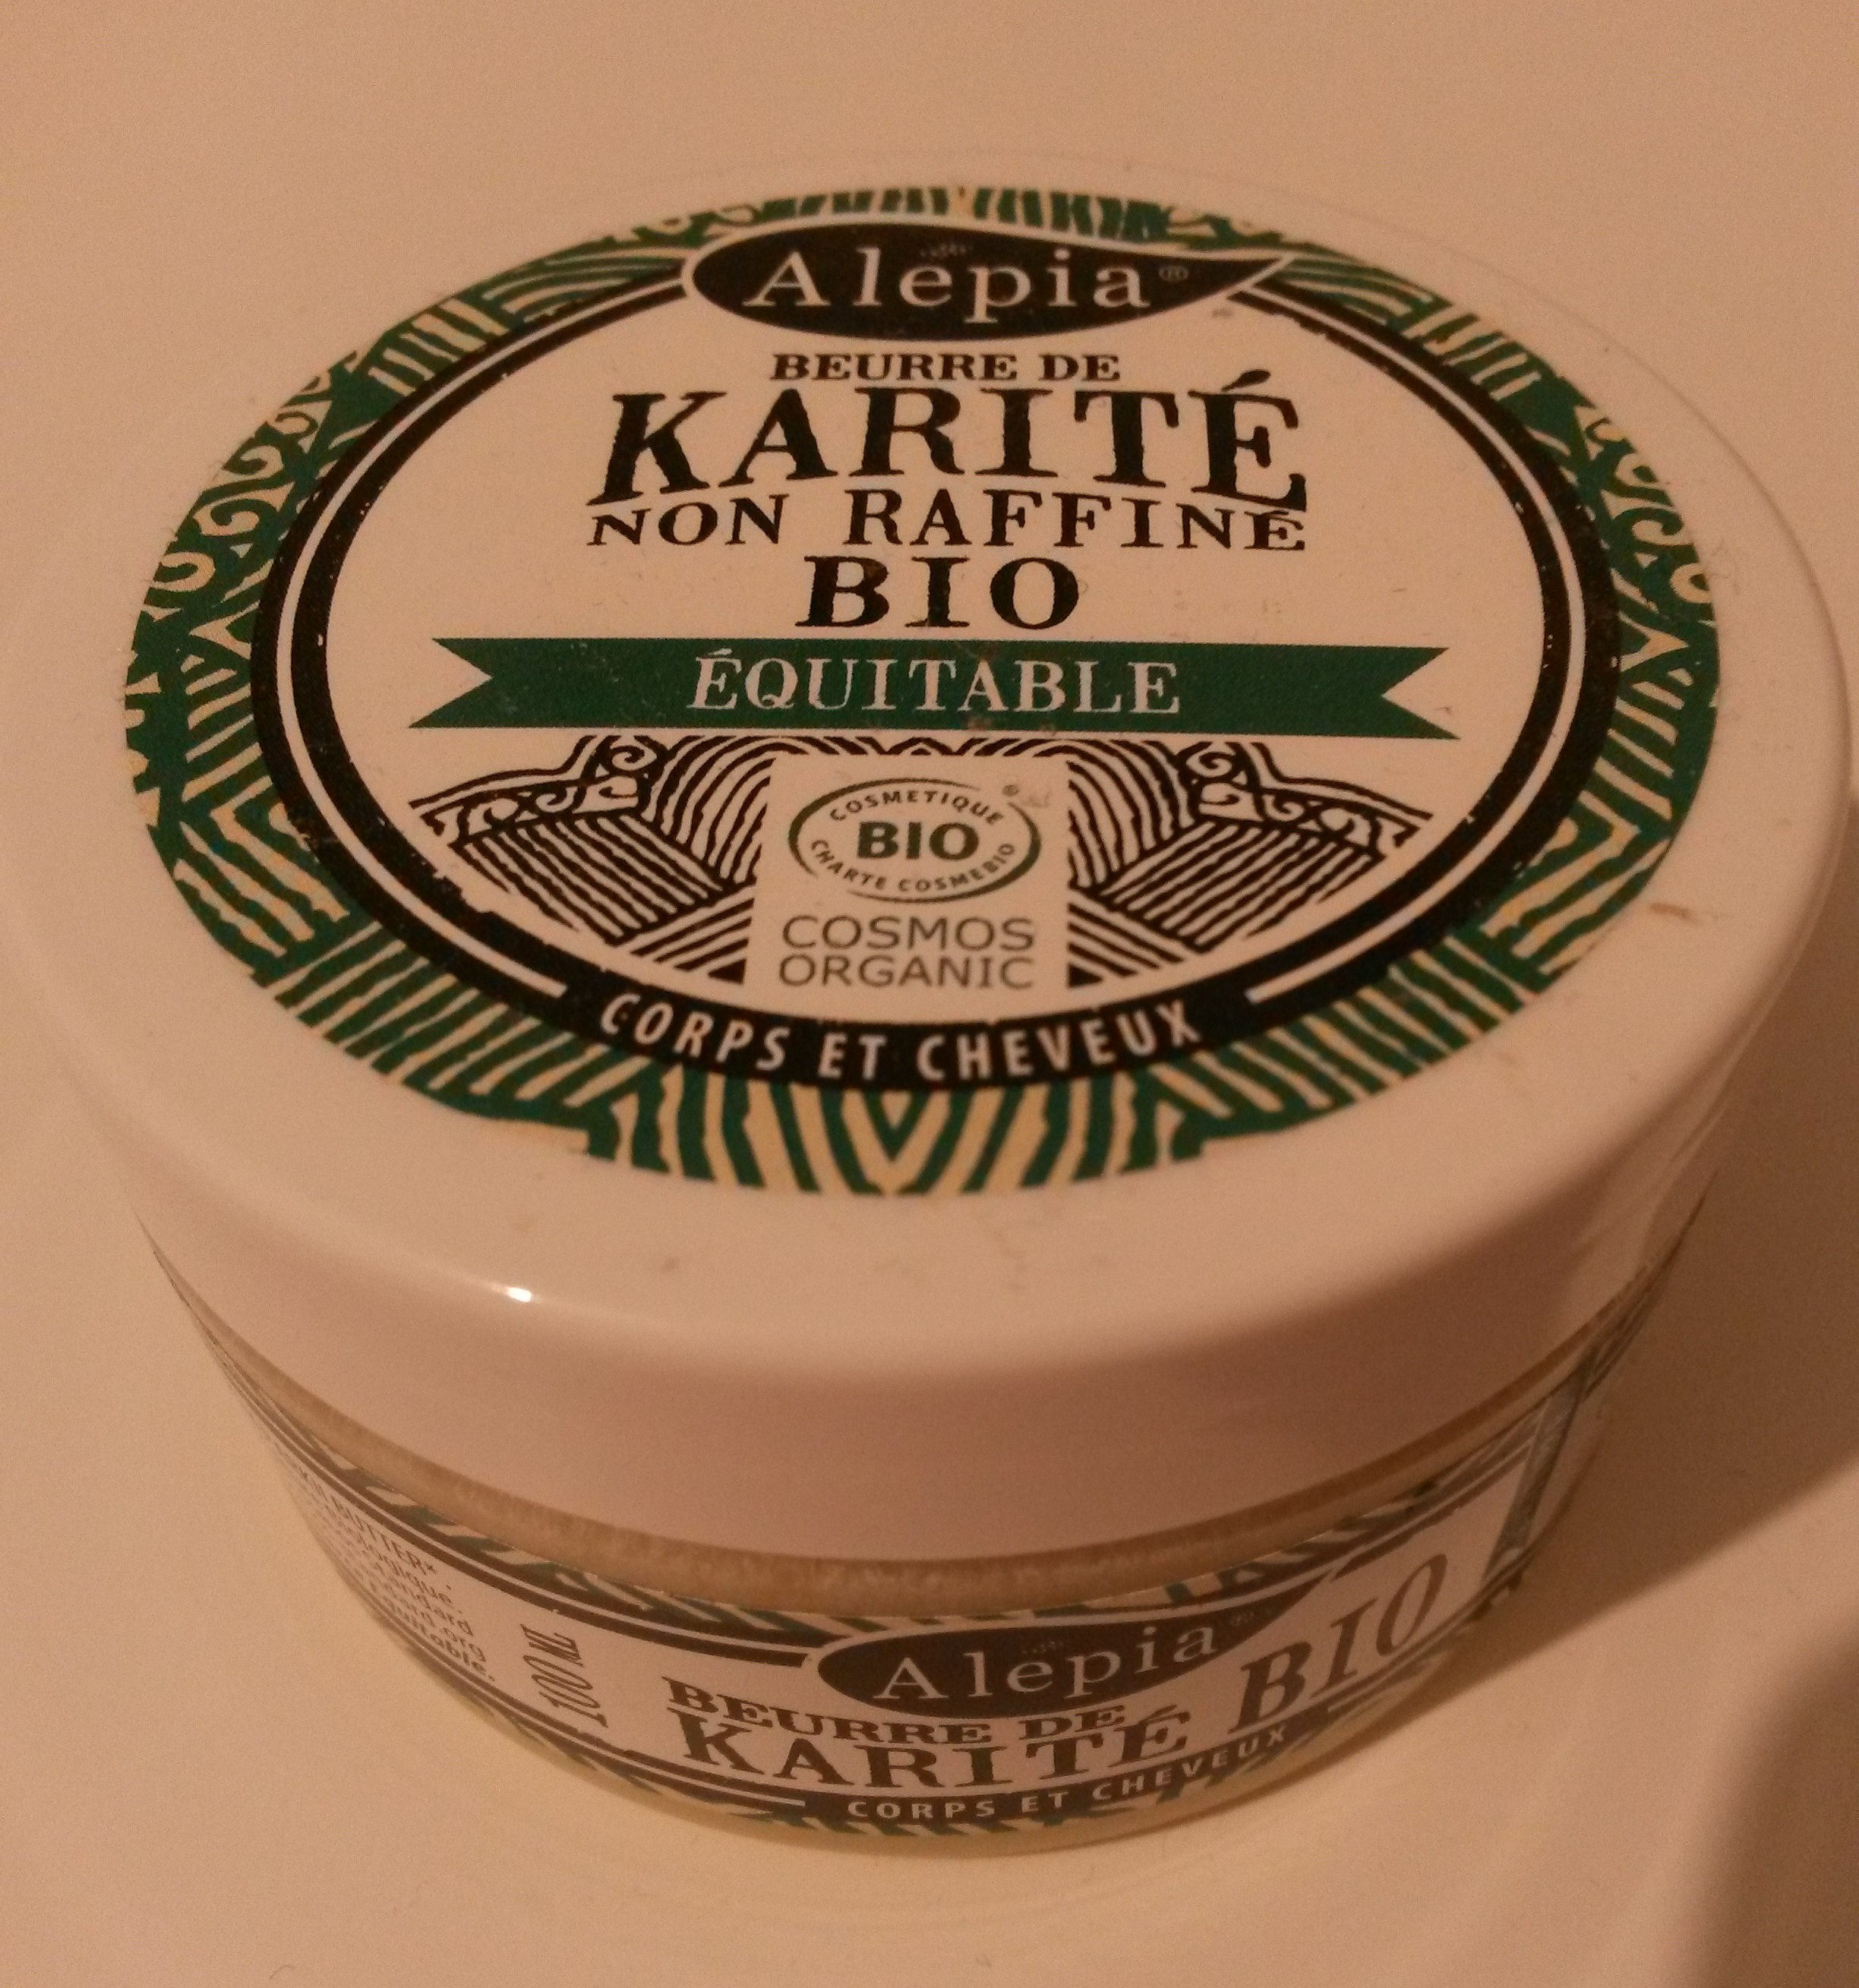 Beurre de karité - non raffiné, bio, équitable - Produto - fr